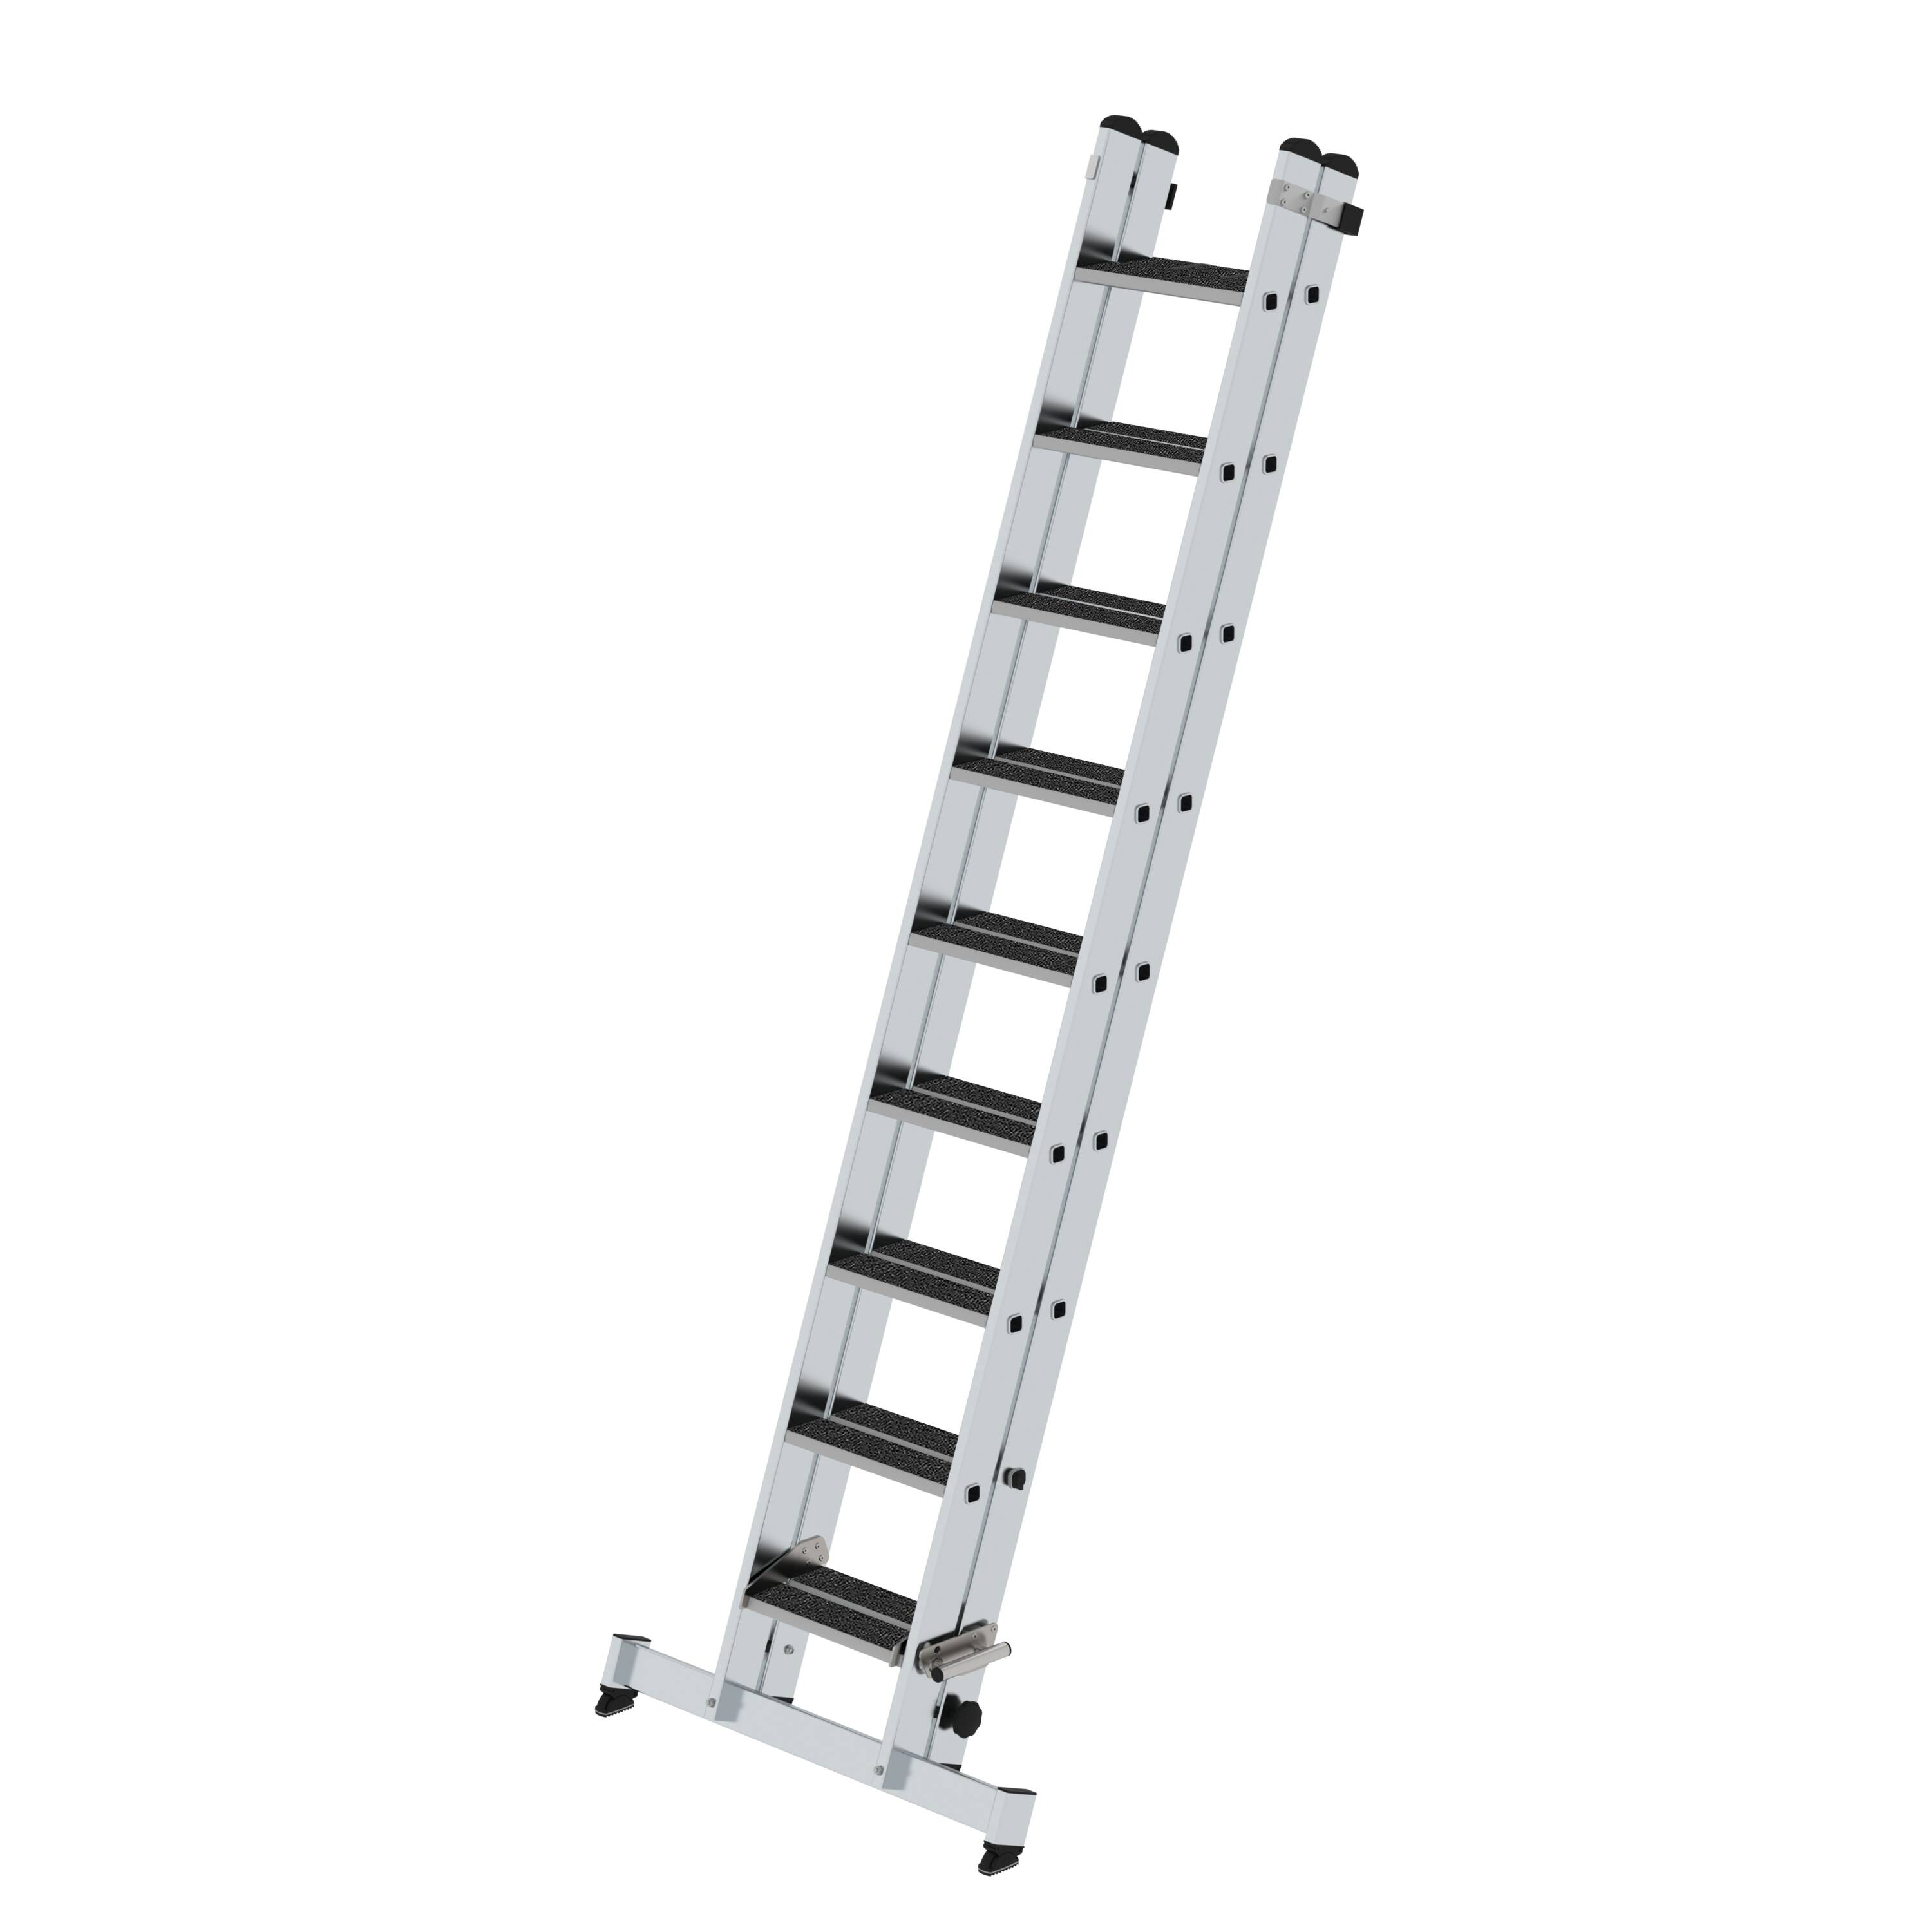 MUNK Stufen-Schiebeleiter 2-teilig mit nivello-Traverse und clip-step R13  